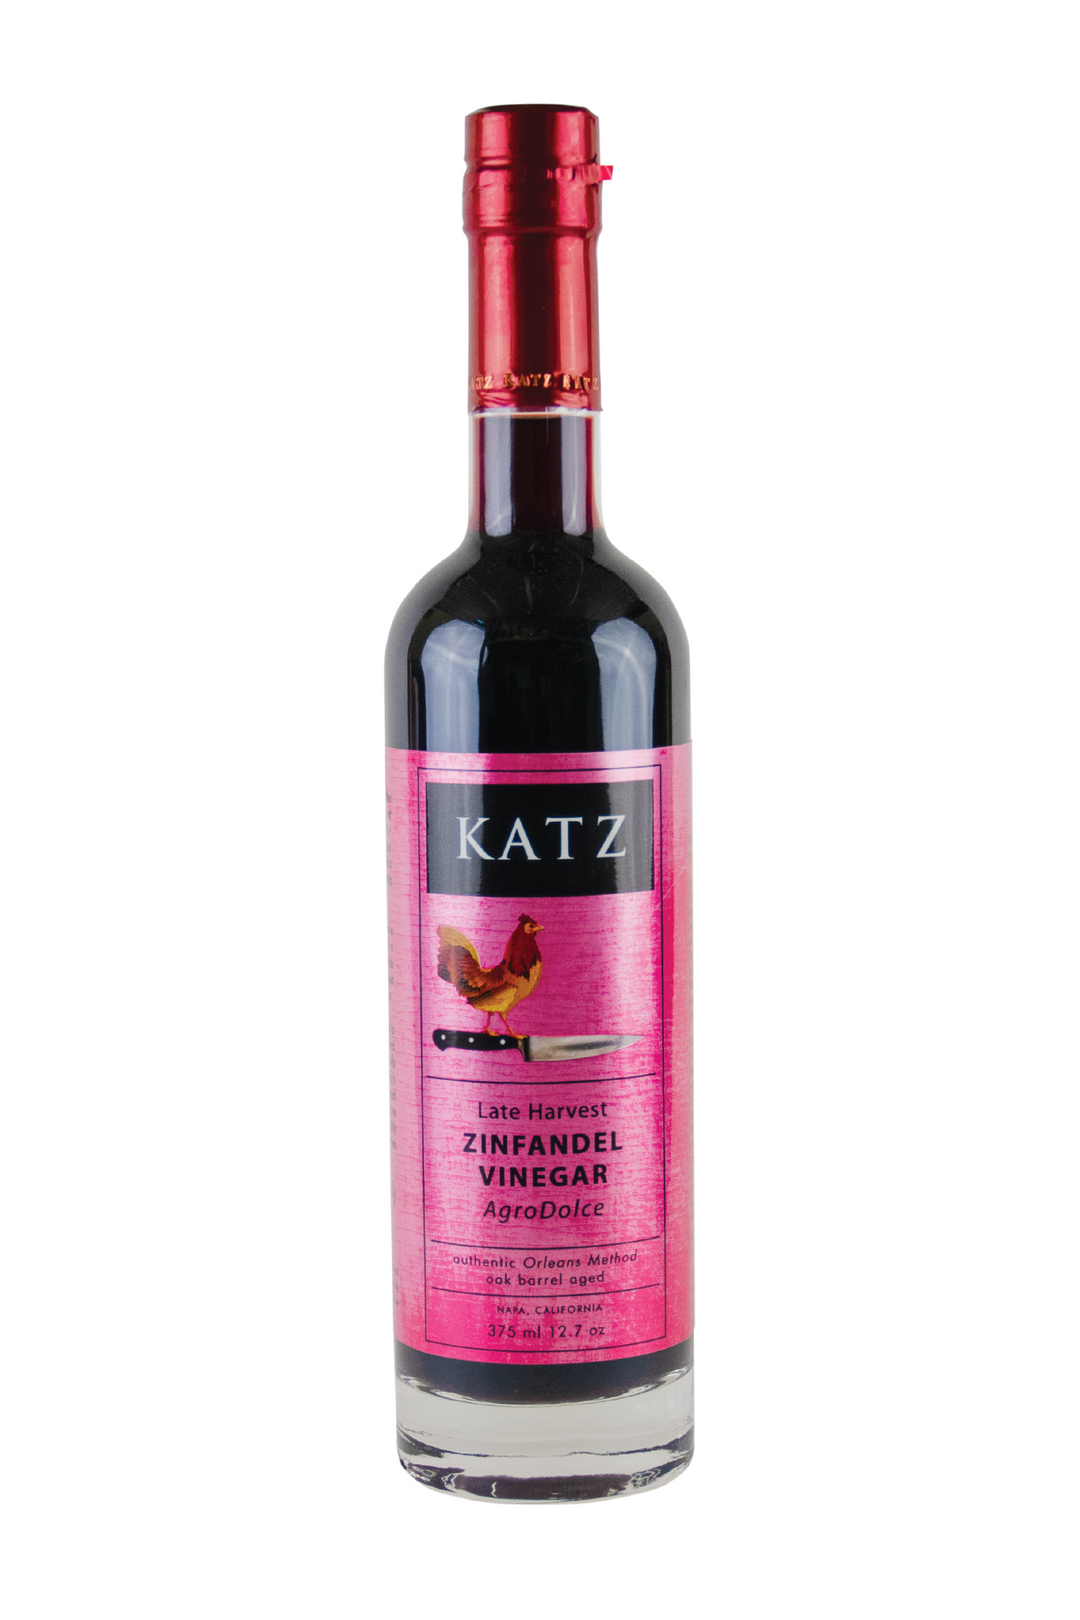 KATZ Late Harvest Zinfandel Vinegar (Agrodolce)